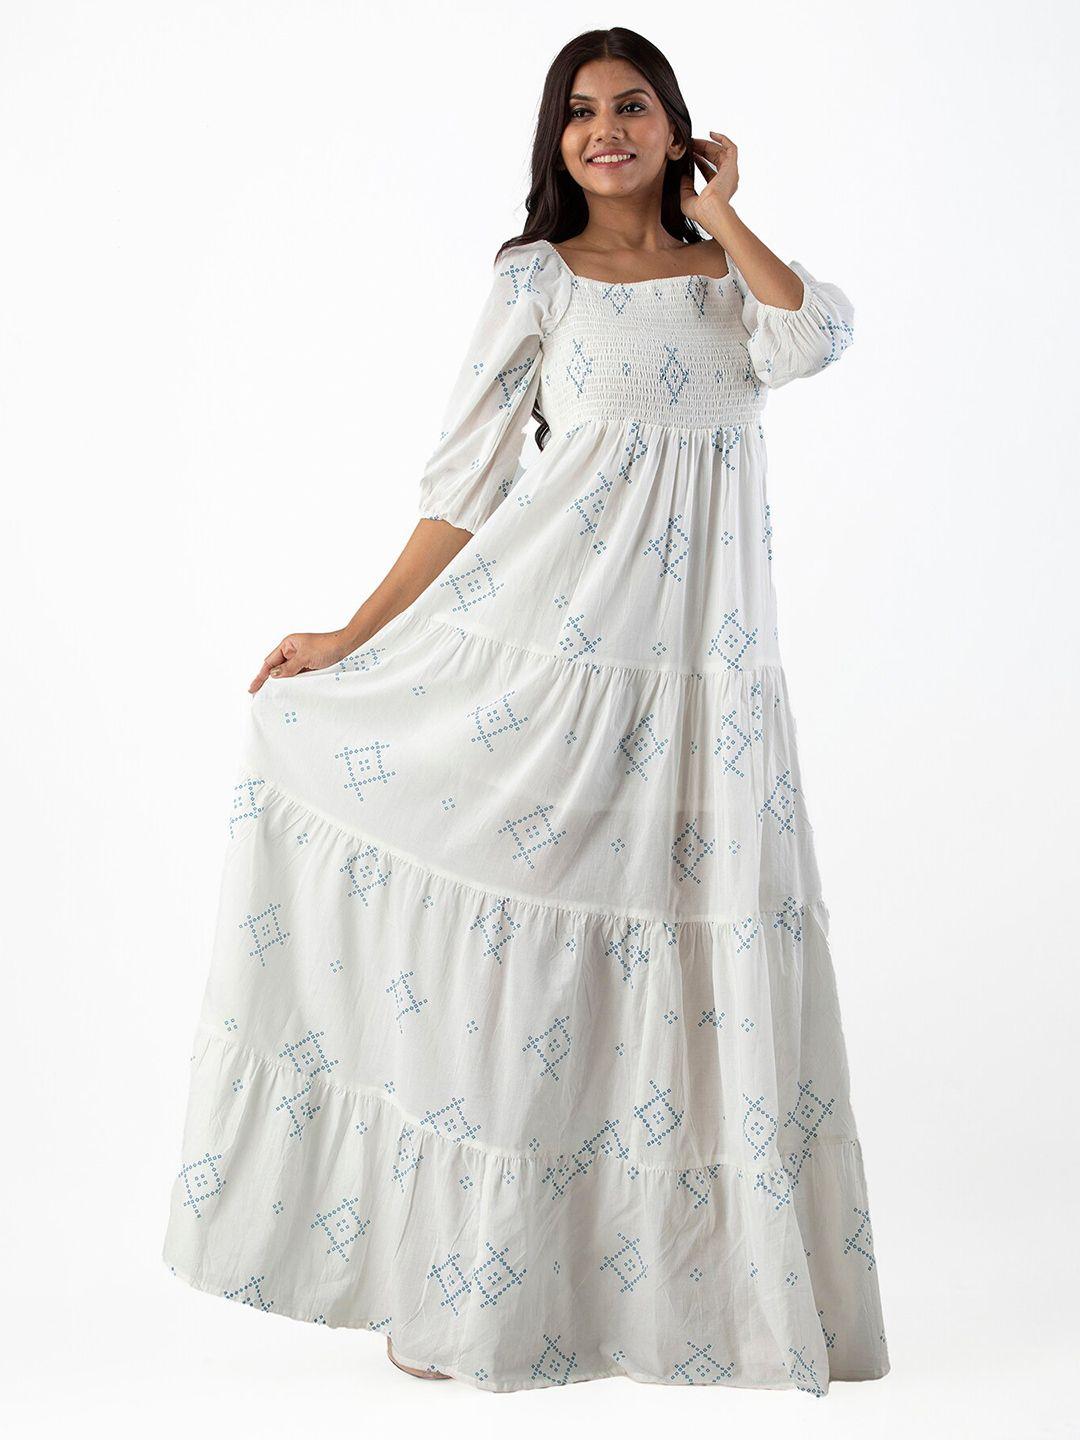 kalini-white-floral-ethnic-maxi-dress